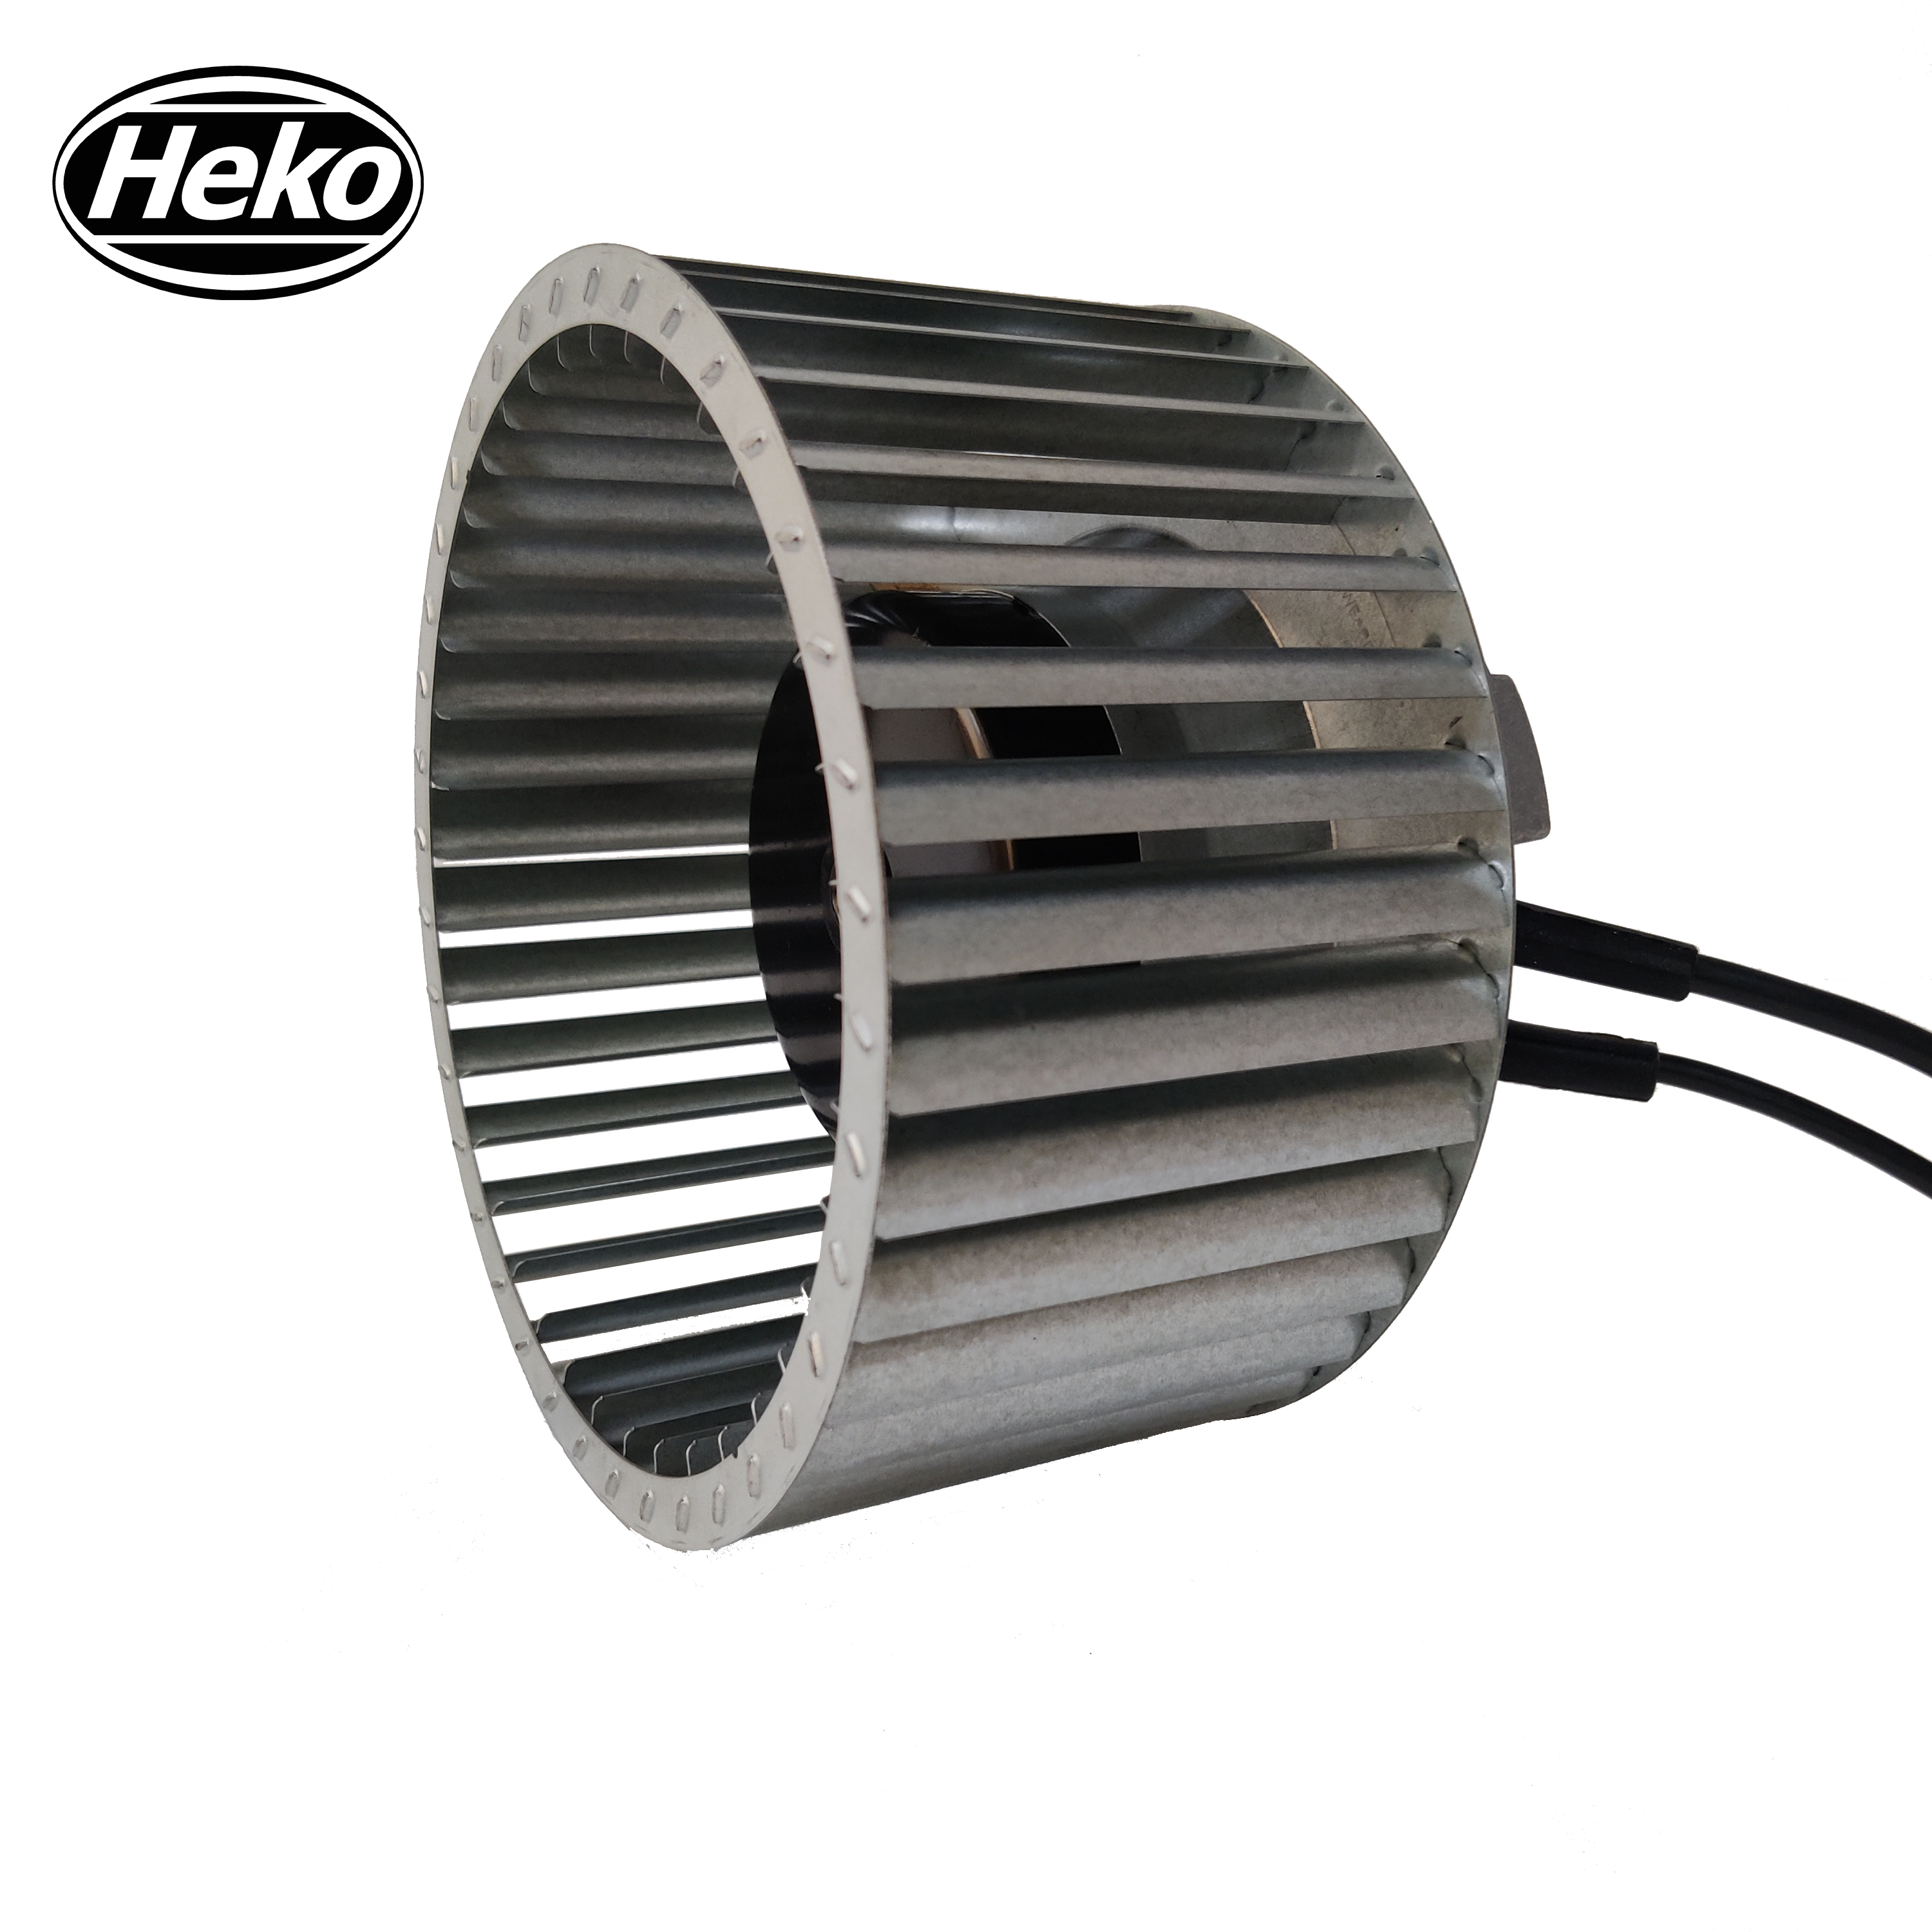 HEKO EC180mm High Speed Centrifugal Fan For Bathroom